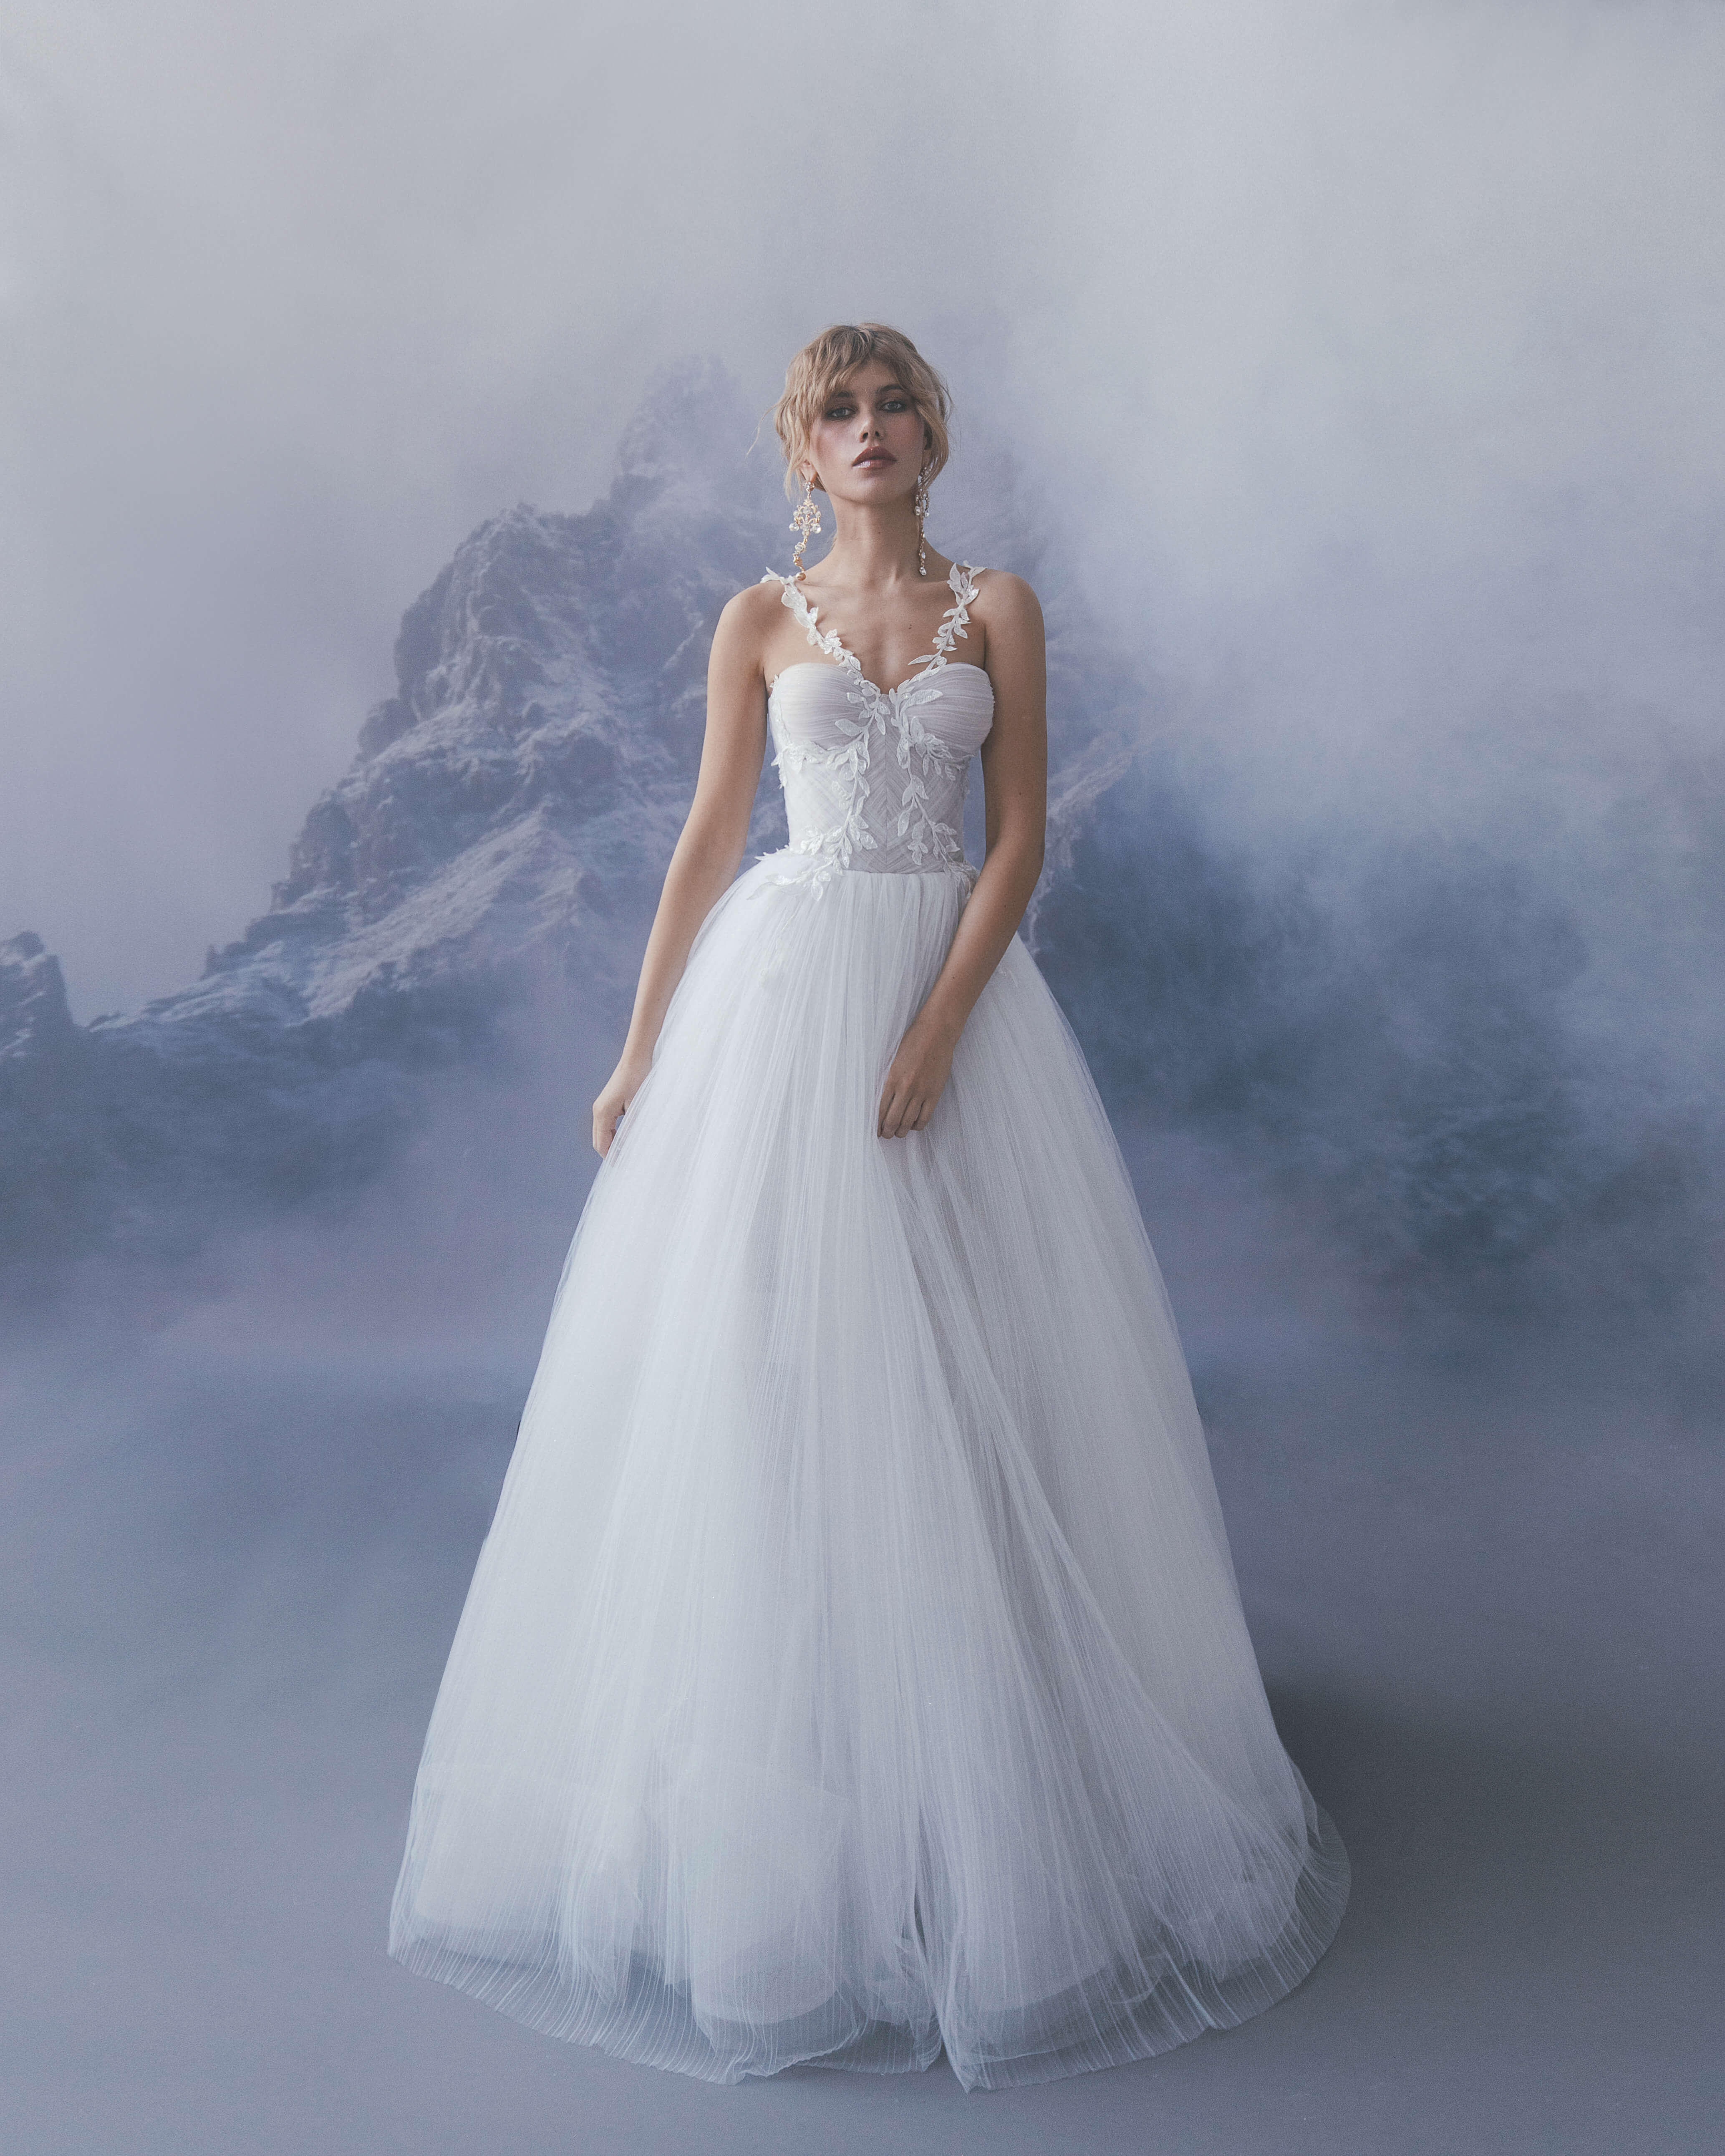 Купить свадебное платье «Гаэлла» Бламмо Биамо из коллекции Сказка 2022 года в салоне «Мэри Трюфель»